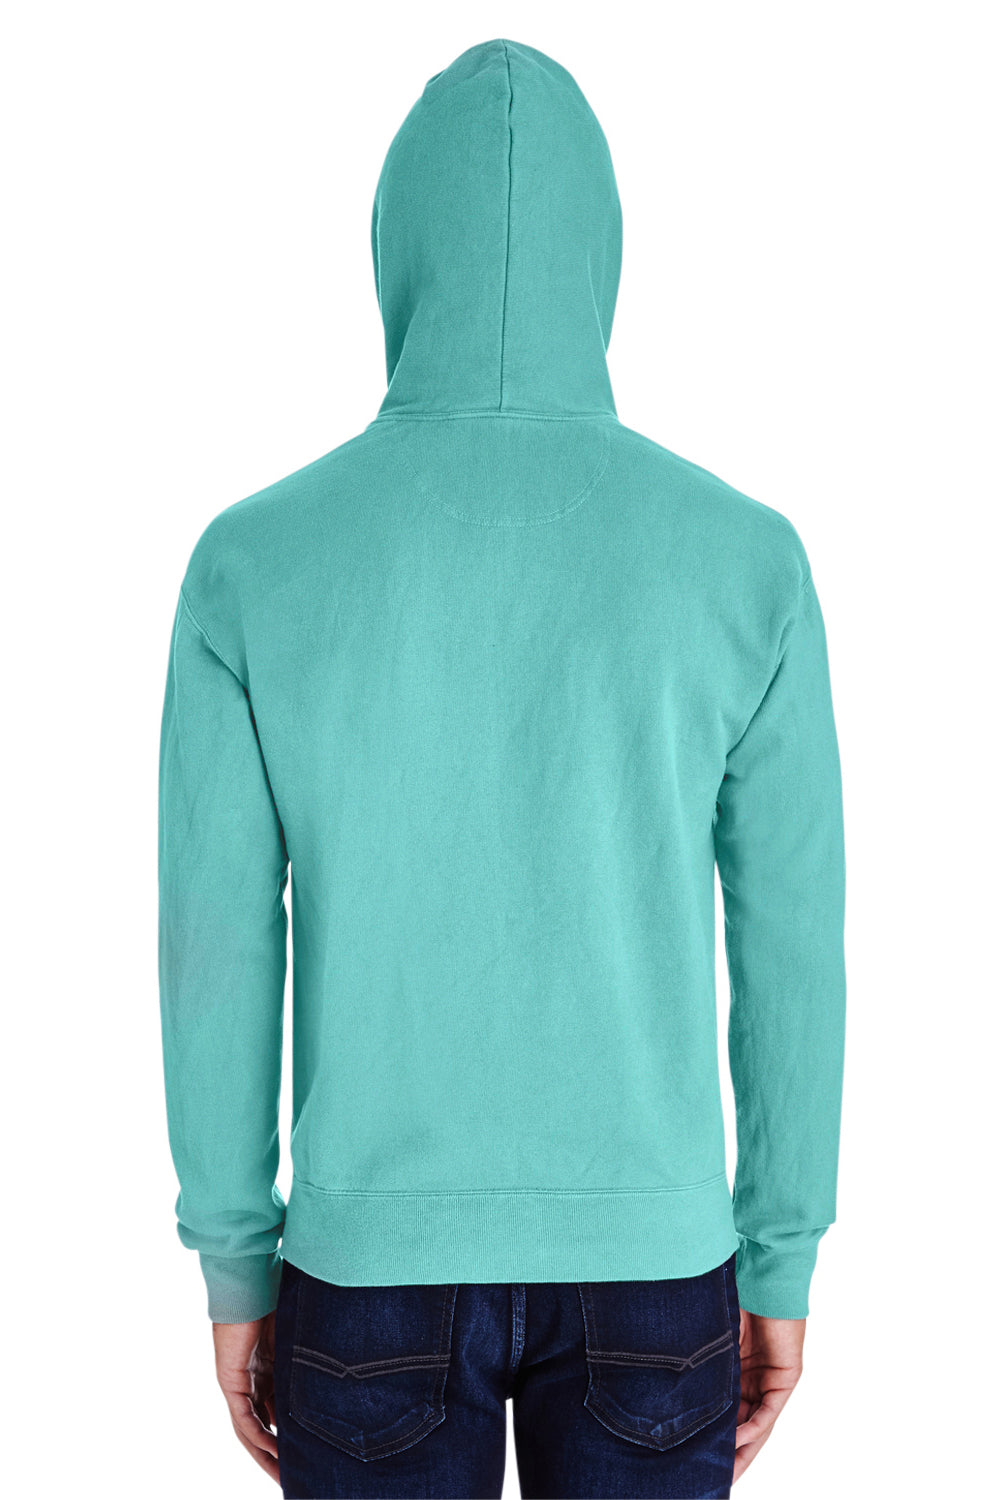 ComfortWash By Hanes GDH450 Mens Hooded Sweatshirt Hoodie Mint Green Back